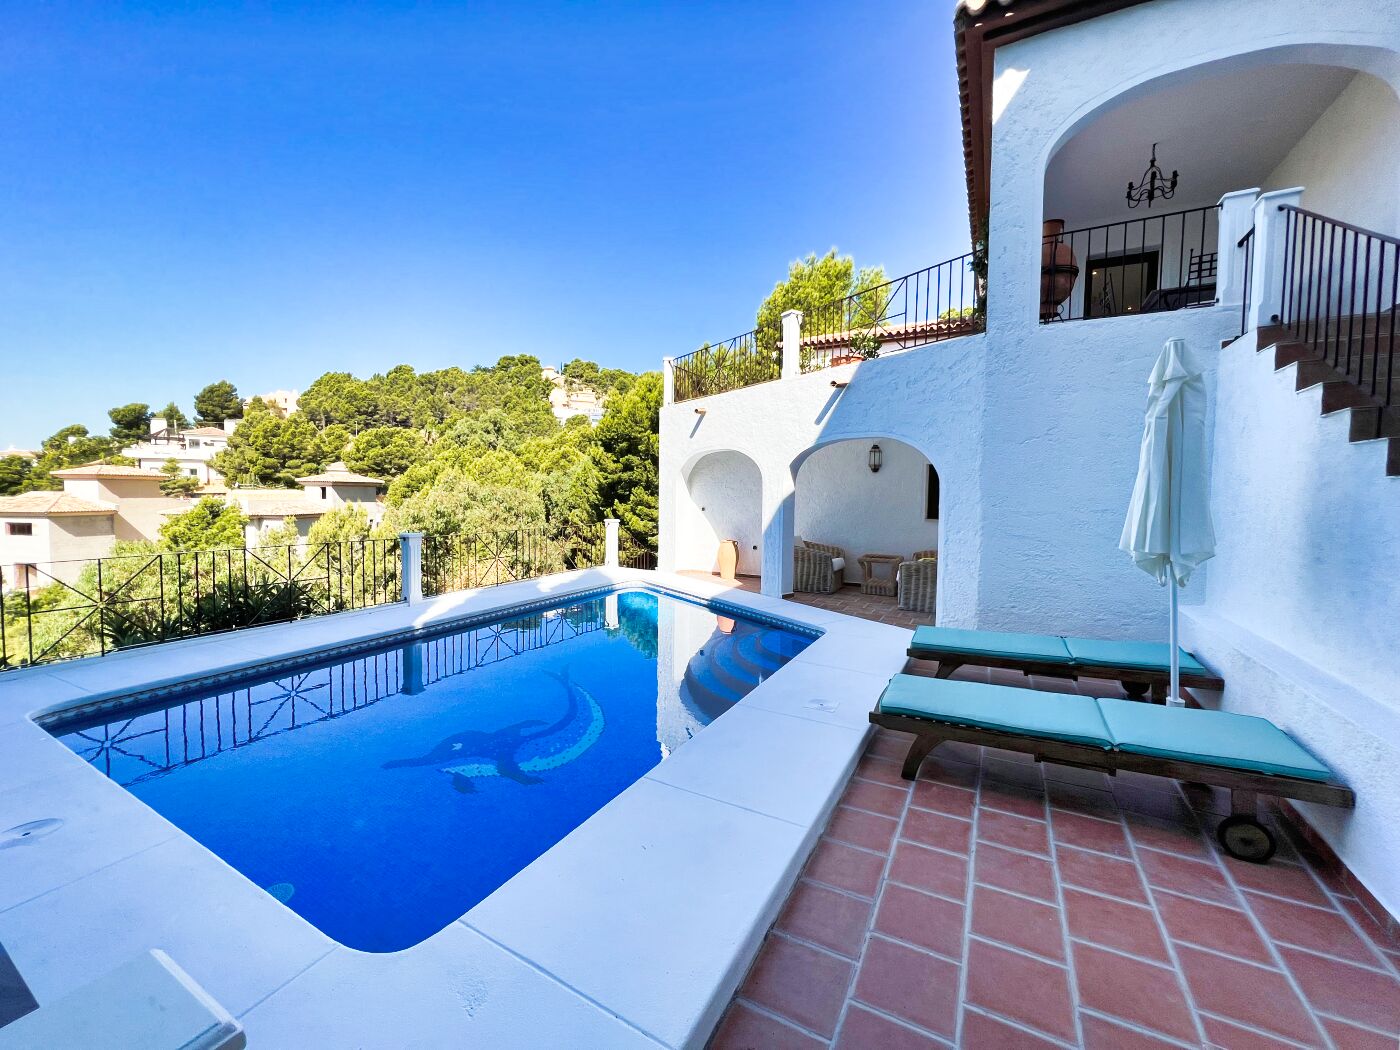 Volledig gerenoveerde villa met adembenemend uitzicht in Sierra Altea